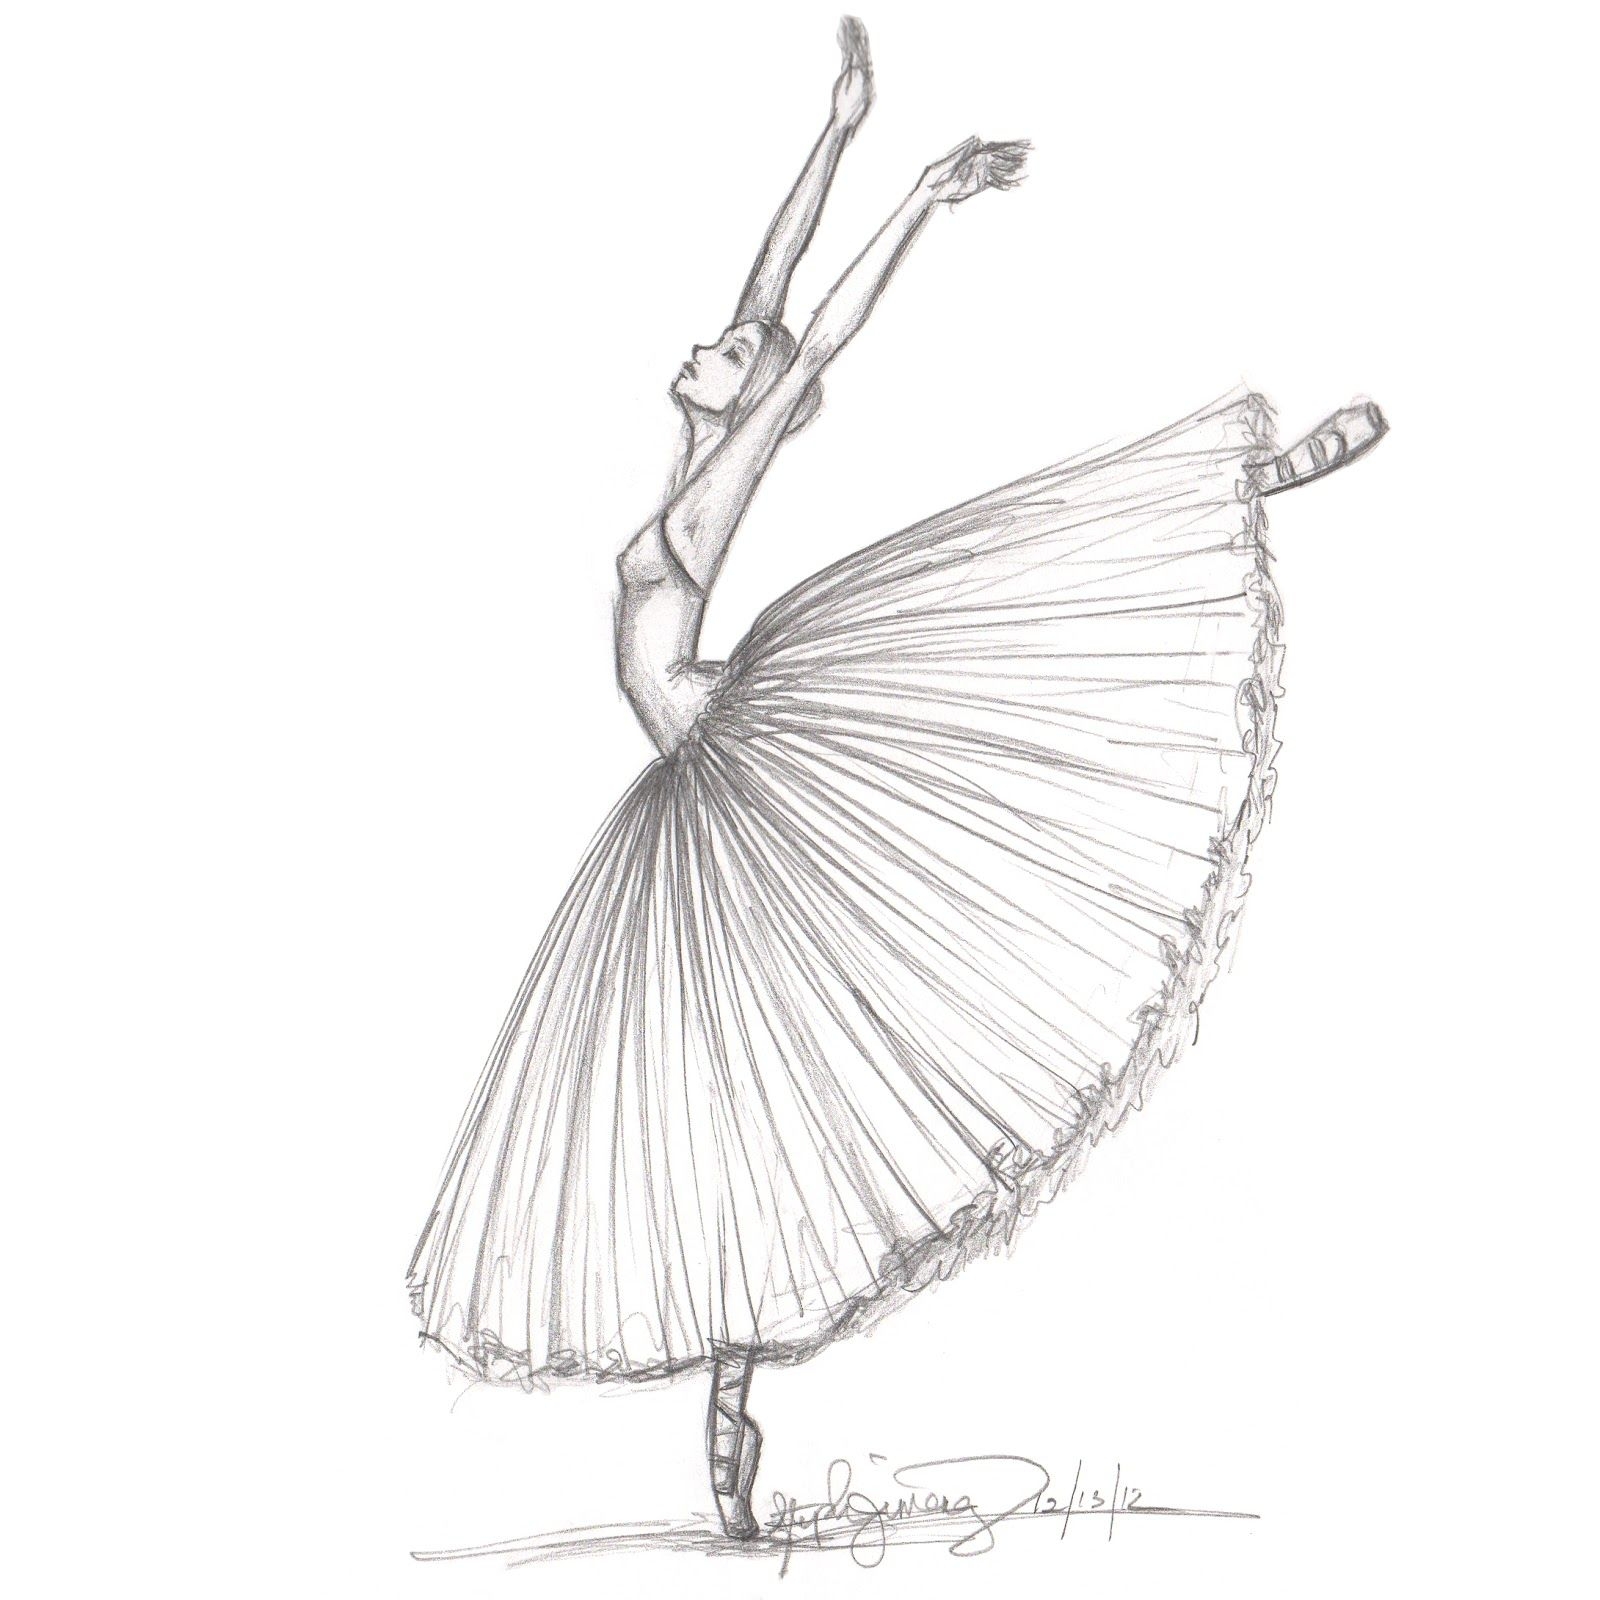 Как нарисовать балерину (53 фото) - поэтапные мастер-классы для начинающих